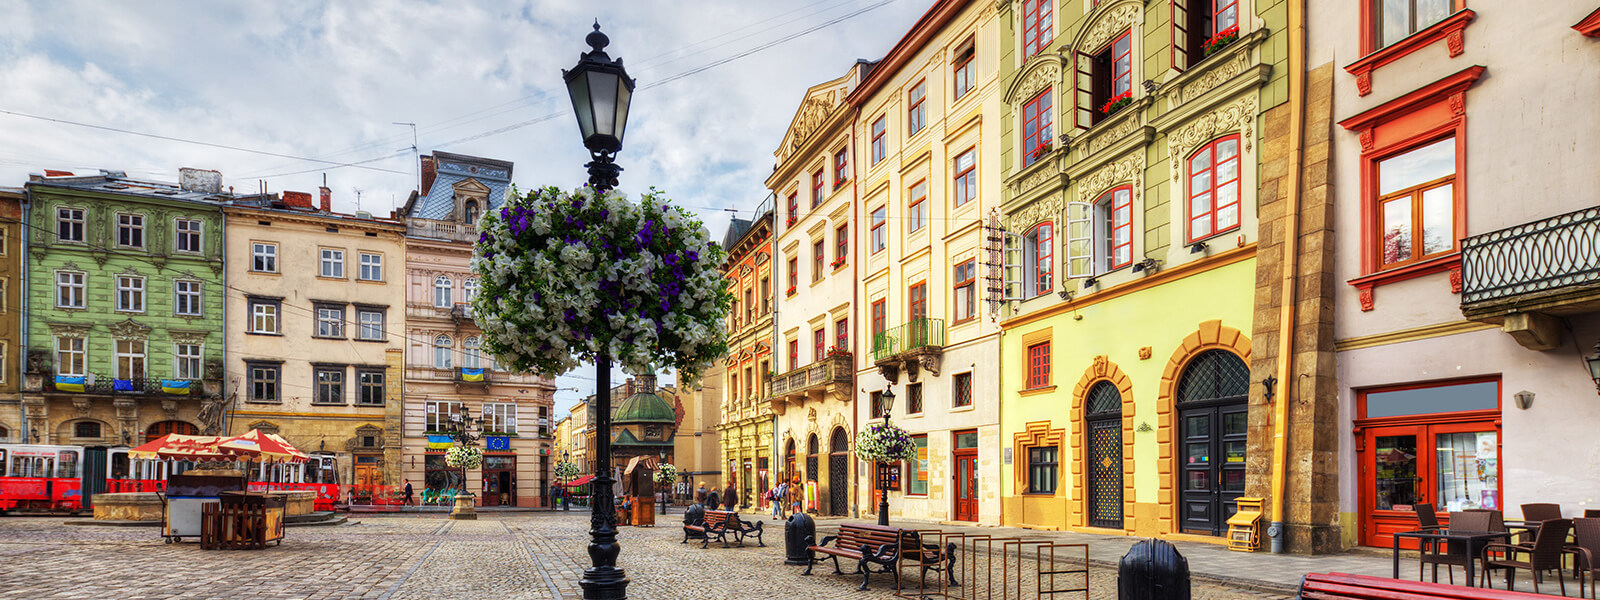 Old Lviv, Ukraine